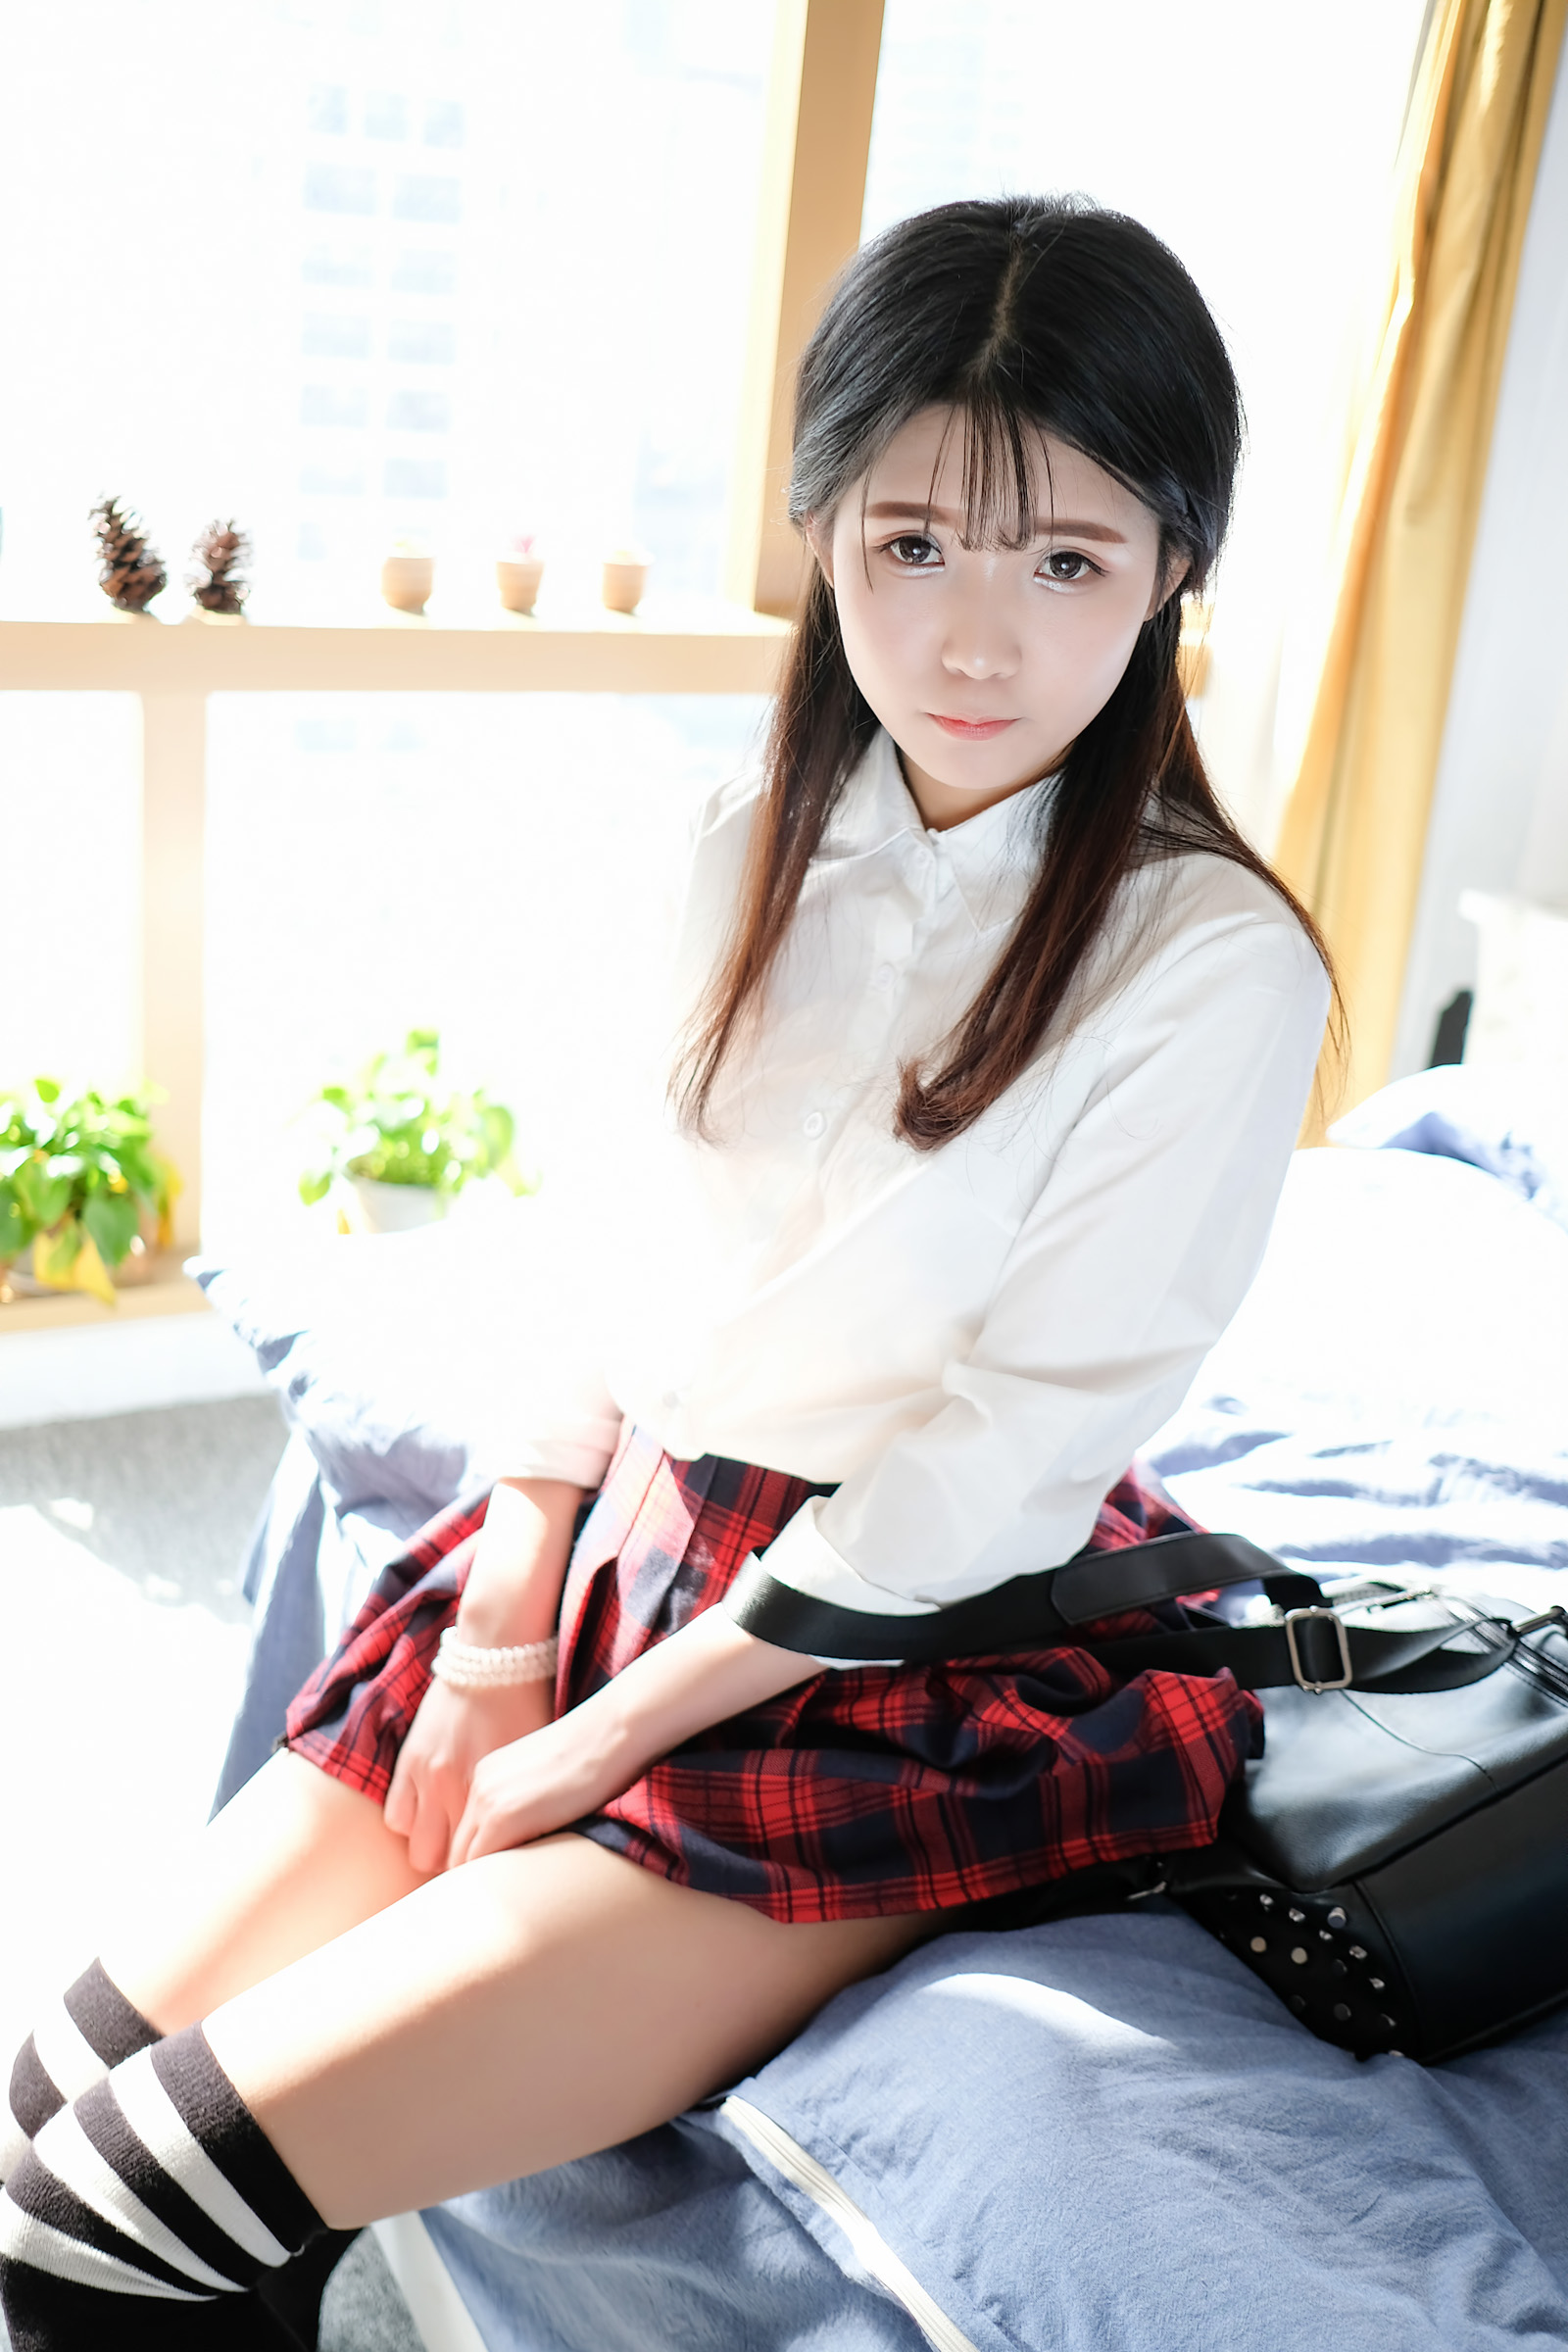 People 1600x2400 women model brunette long hair Asian portrait display knee-highs miniskirt sunlight sitting in bed blouses